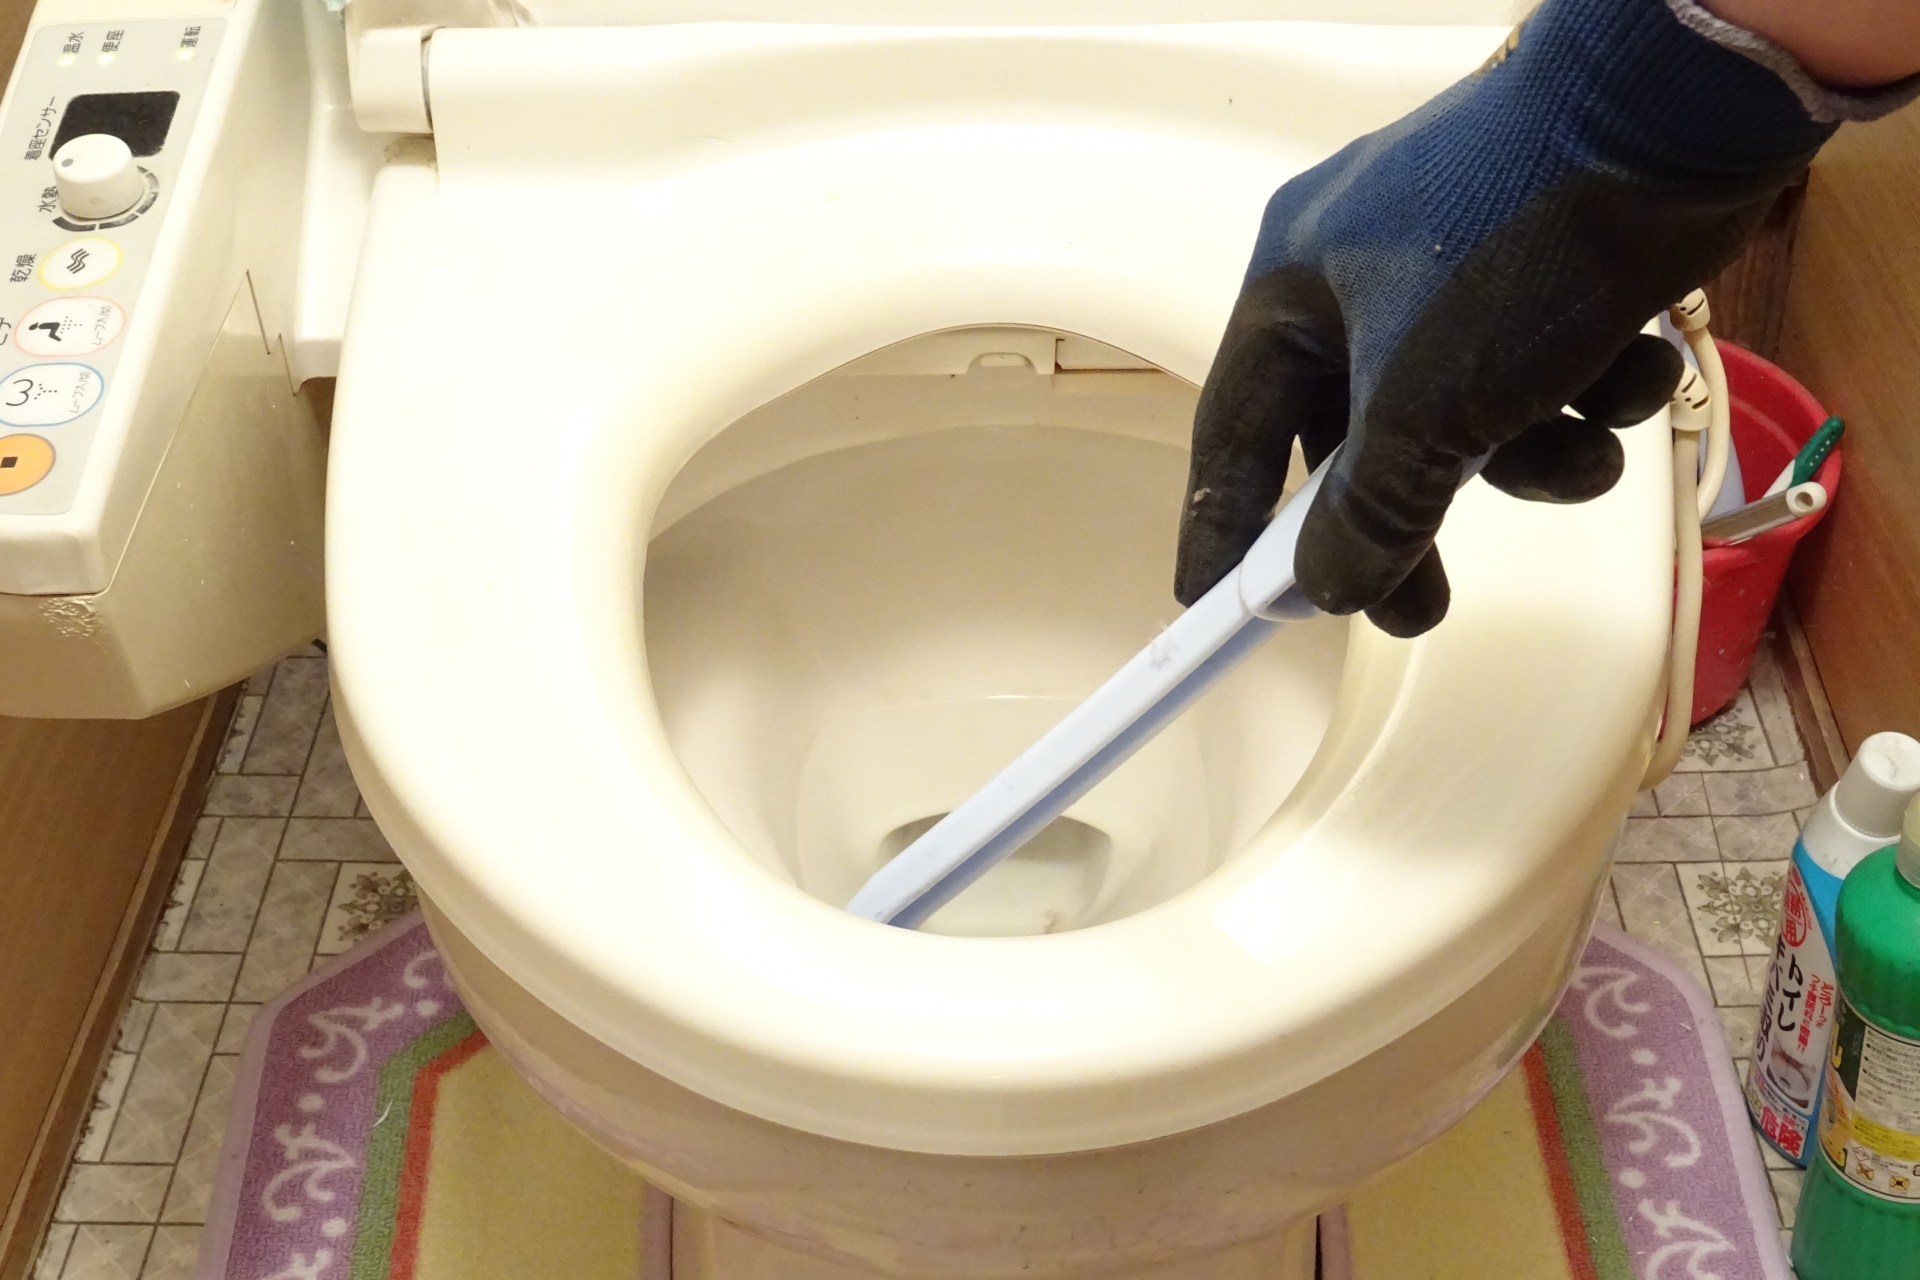 便器の掃除に便利なトイレブラシの種類と選び方について解説